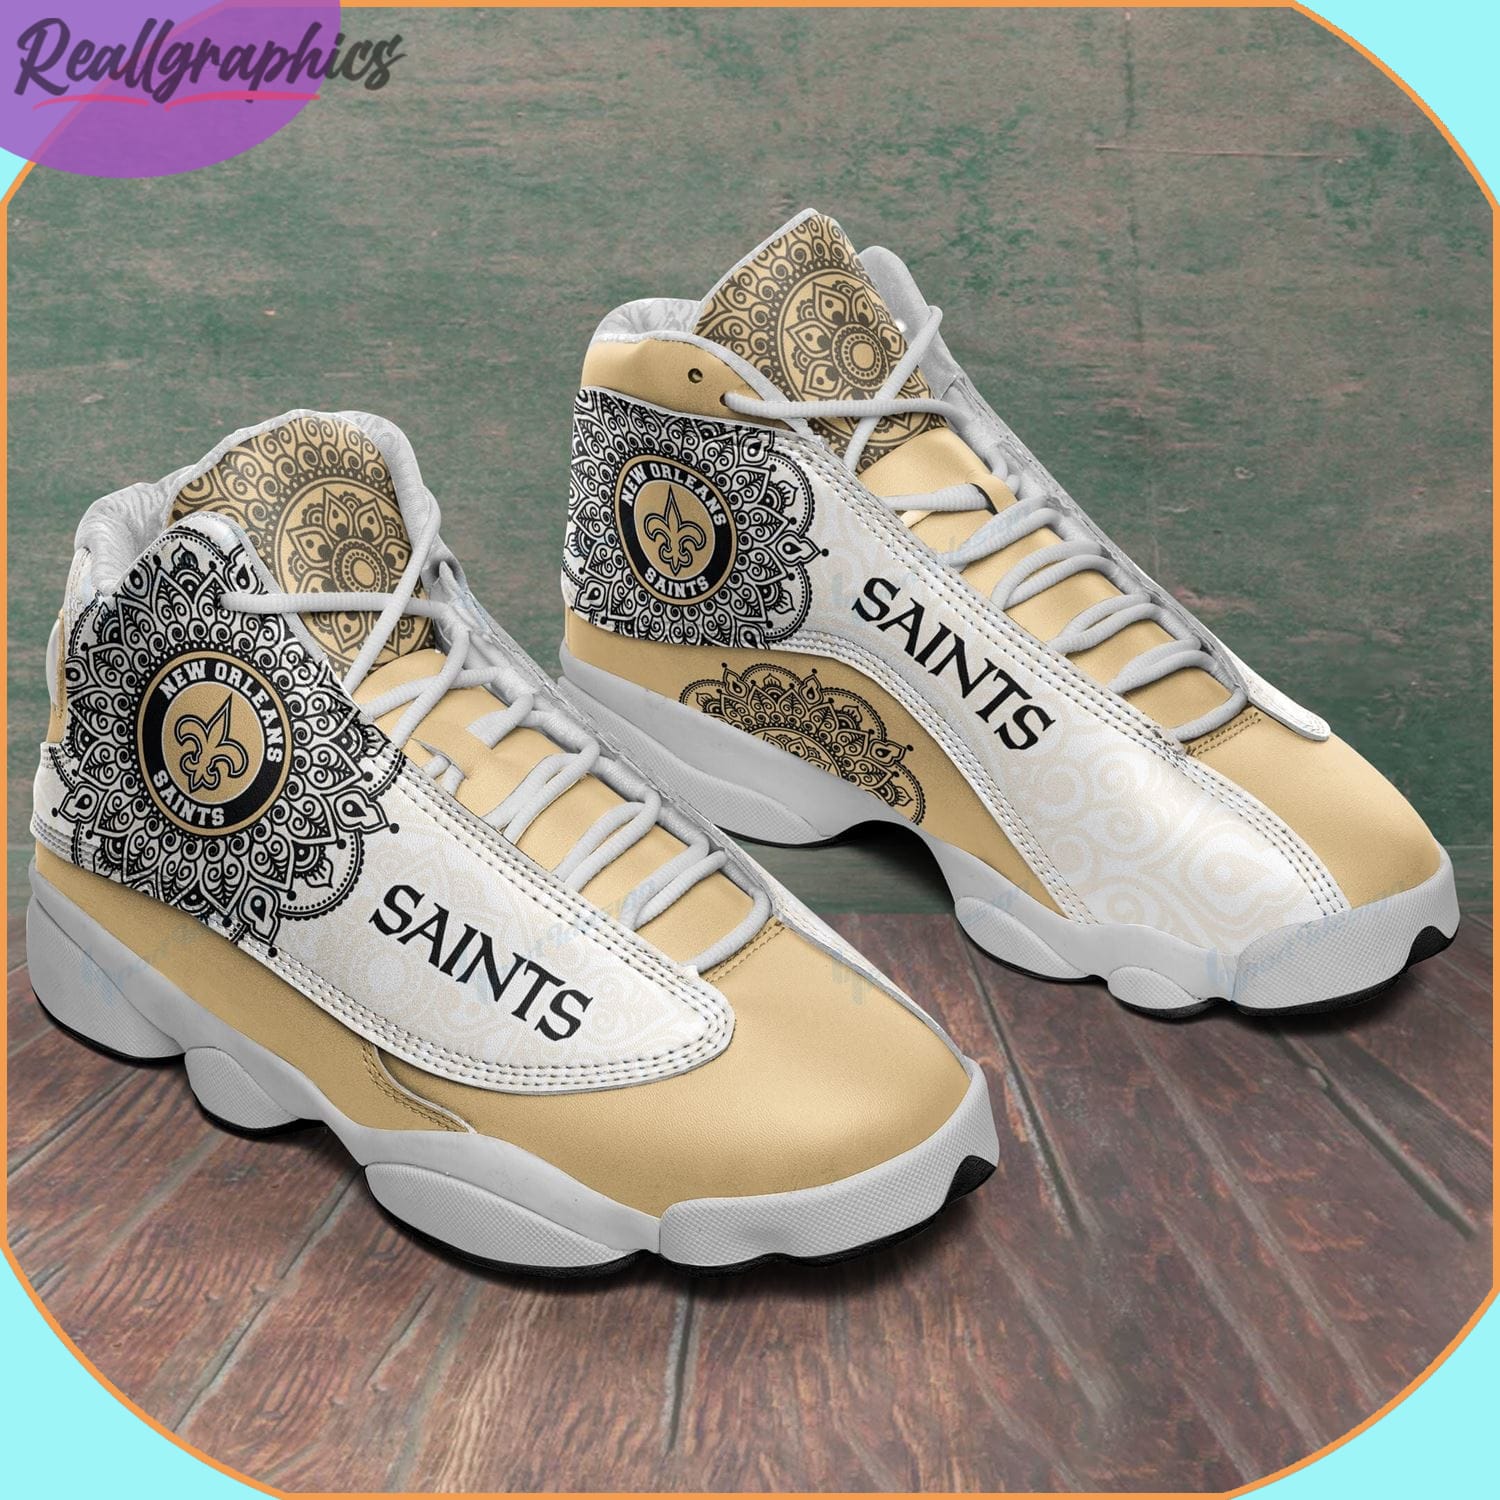 New Orleans Saints Air Jordan 13 Sneakers Nfl Custom Sport Shoes